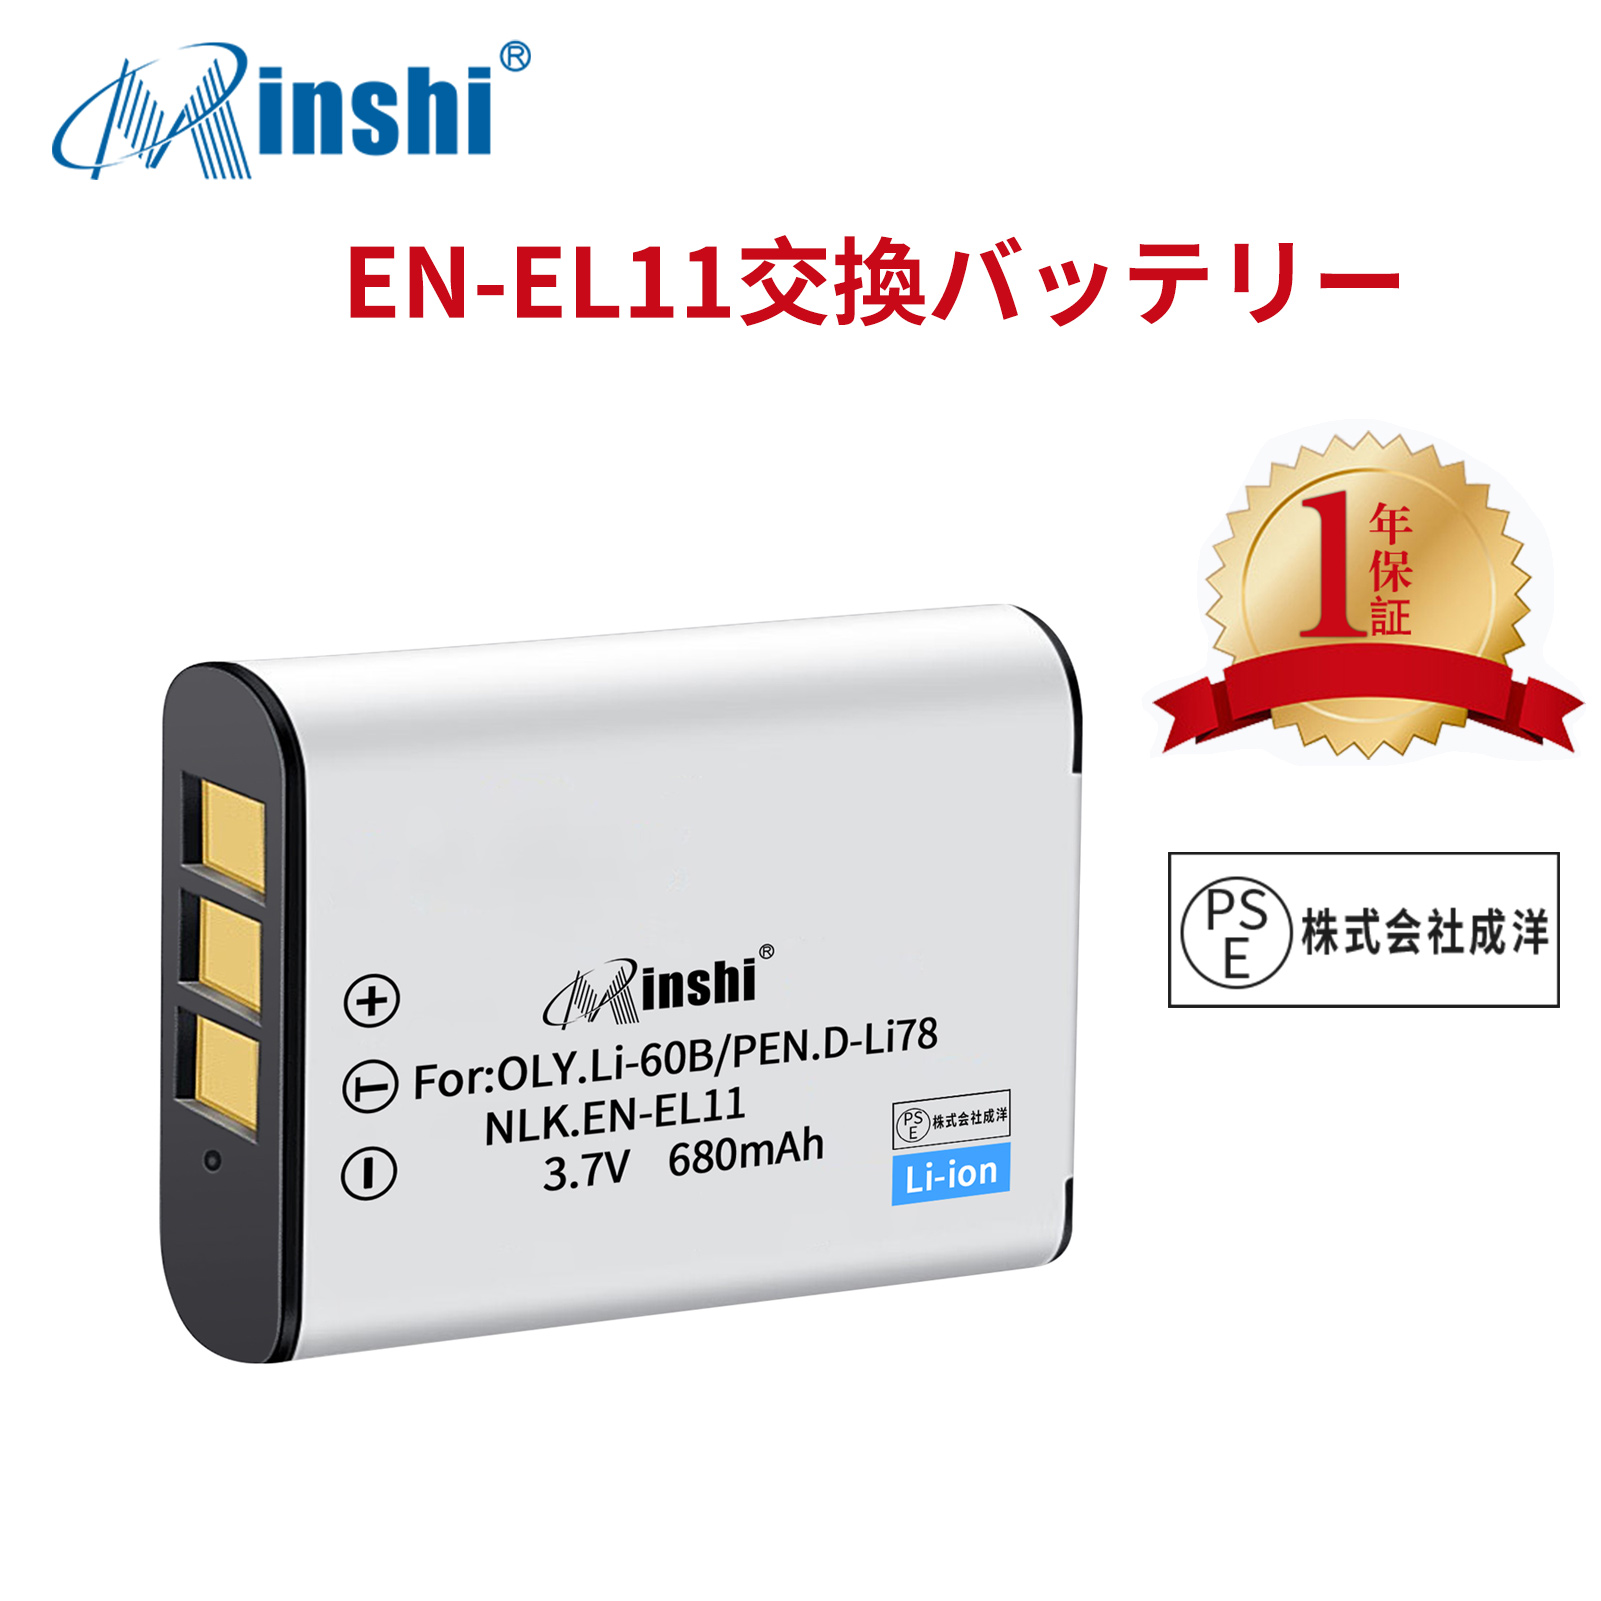 【1年保証】minshi NIKON Optio M50 EN-EL11 【680mAh 3.7V】PSE認定済 高品質交換用バッテリー オリジナル充電器との互換性がない